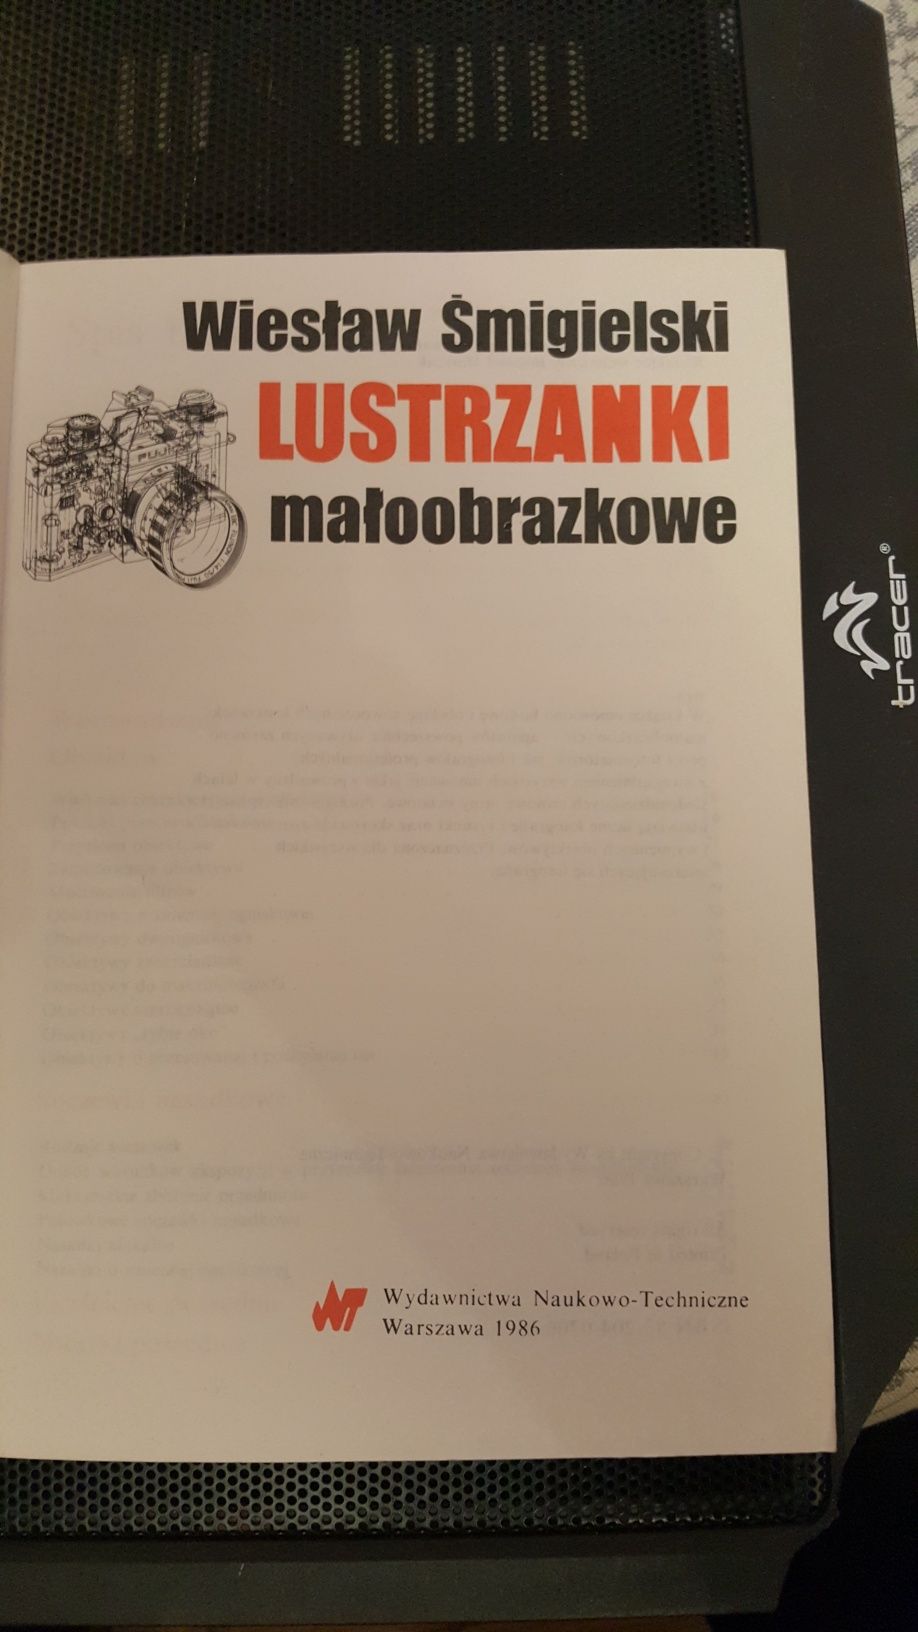 "Lustrzanki małoobrazkowe" Wiesław Śmigielski